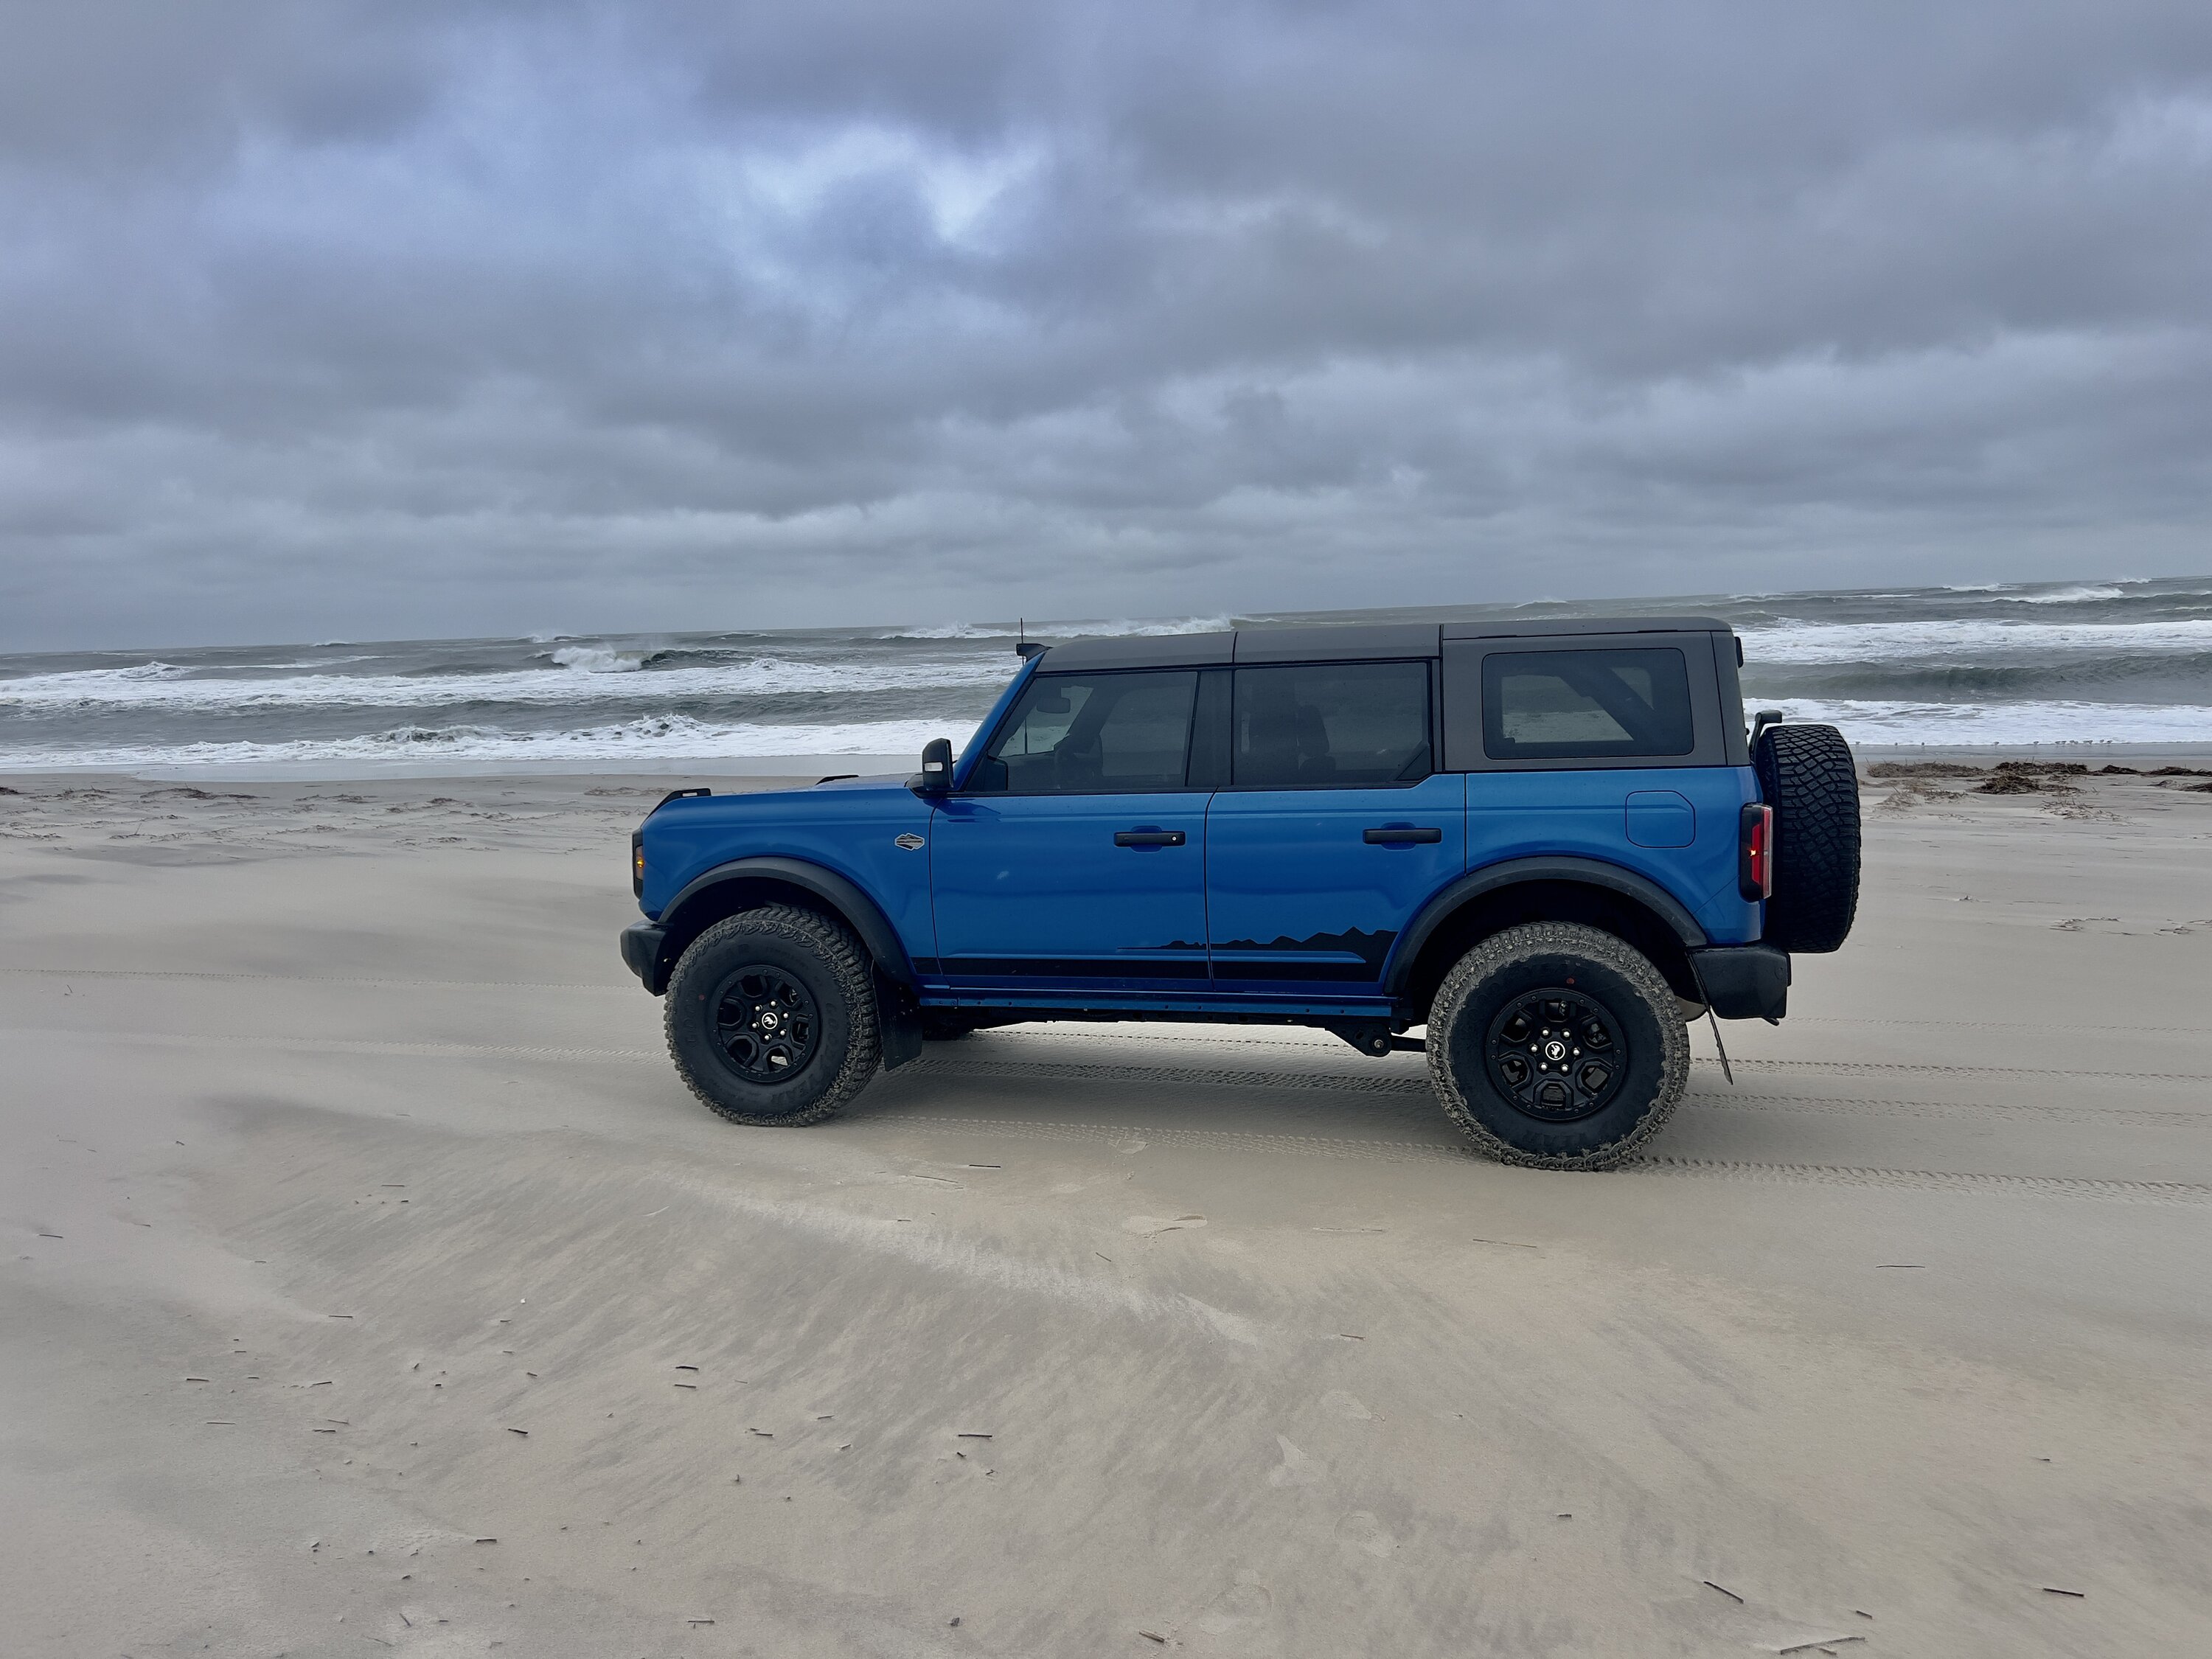 Ford Bronco Let’s see those beach pics! 6A3D2F7B-11EC-4568-AD1F-04C4AE78B60C